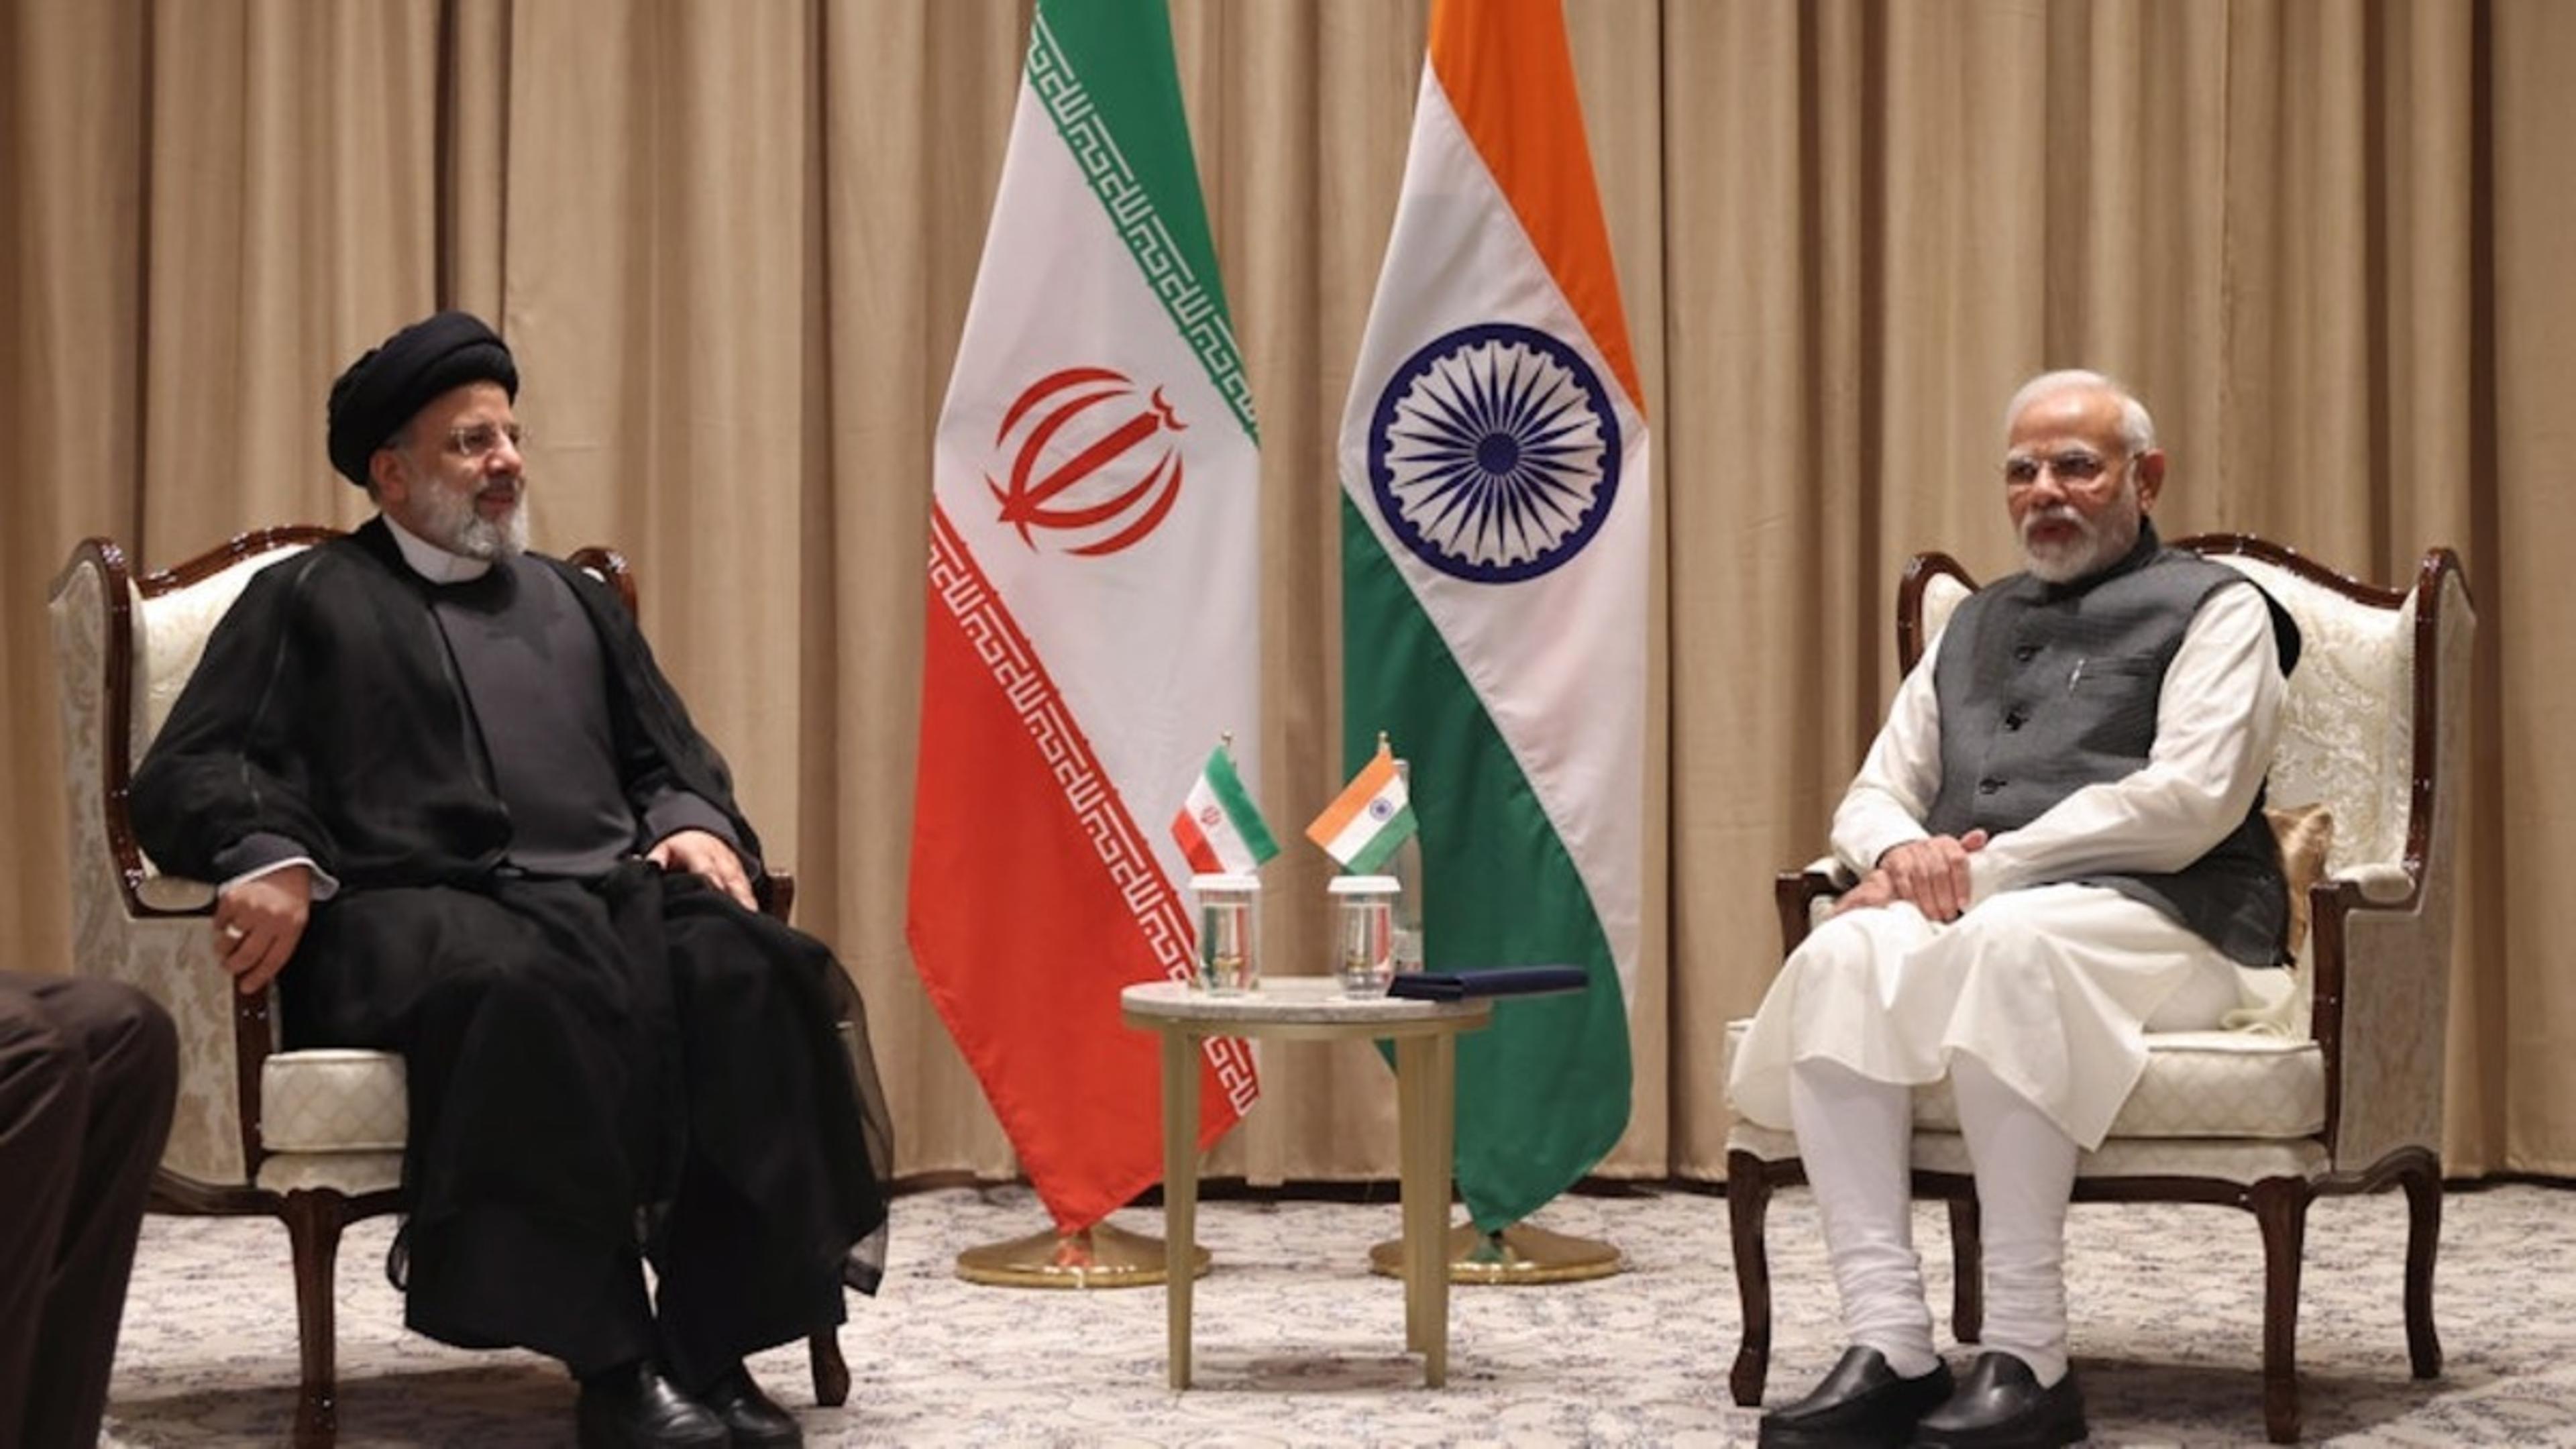 इब्राहिम रायसी के कार्यकाल में ईरान के रूप में भारत को मिला था पश्चिम एशिया में
मज़बूत साझेदार